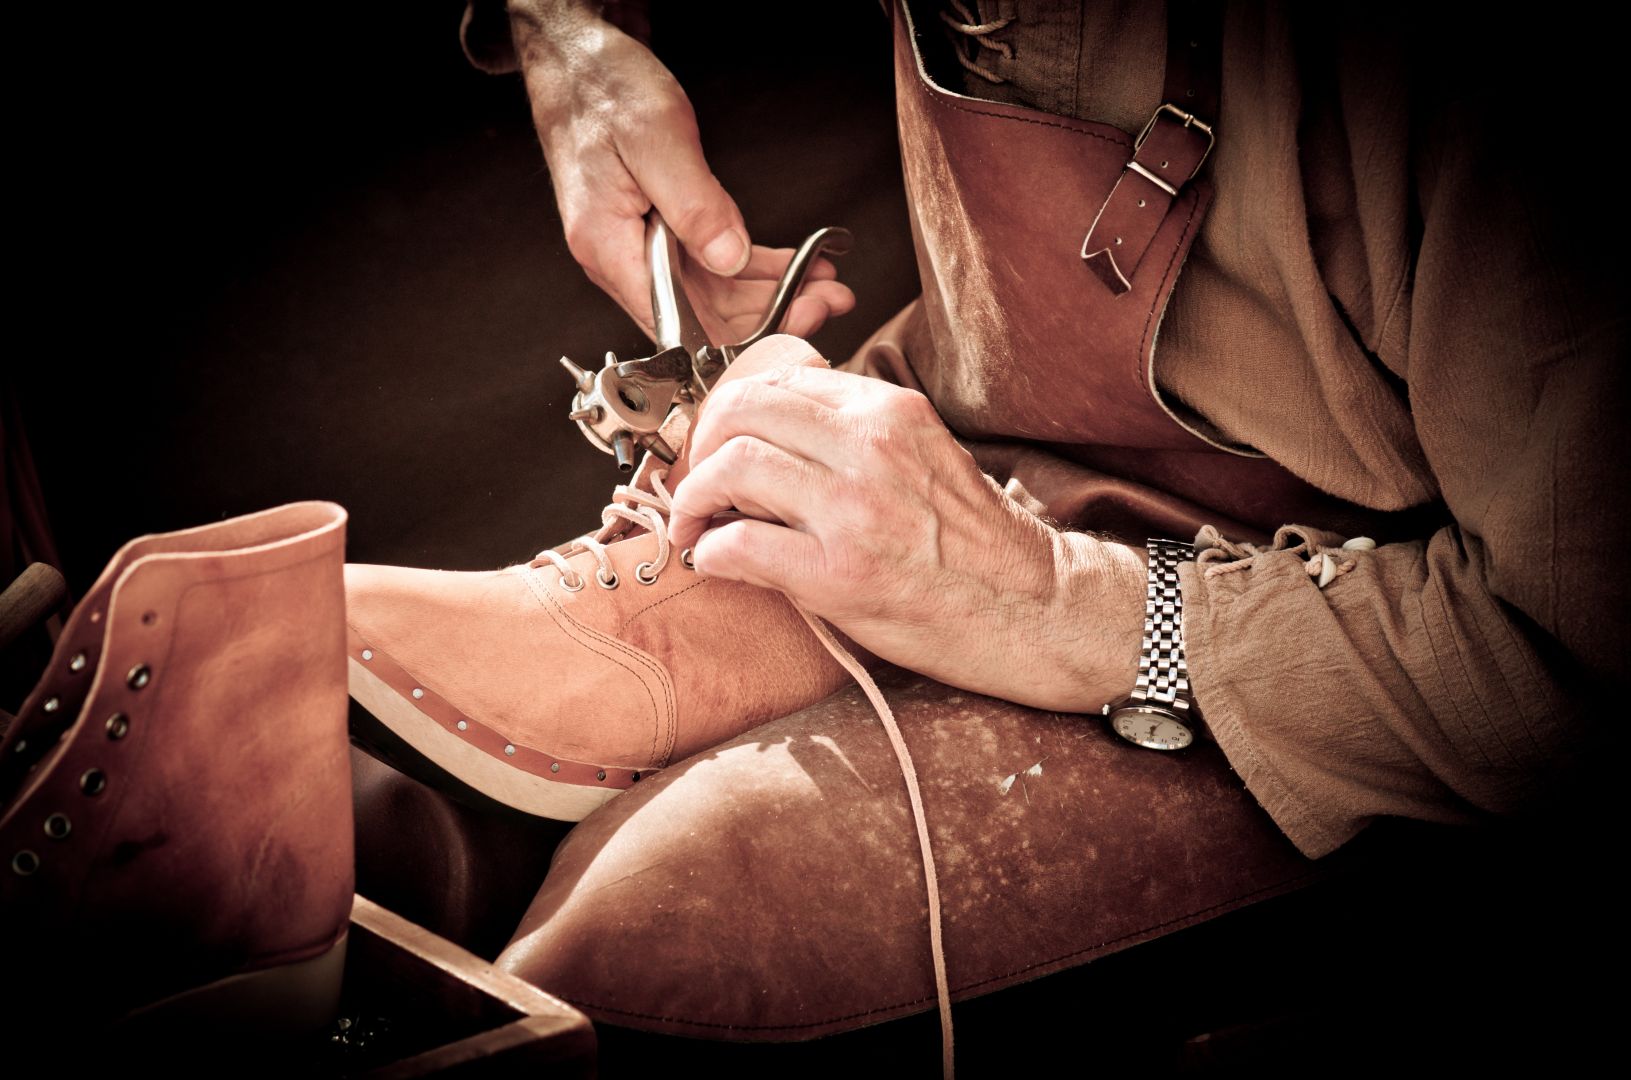 Poptávka na dodání pracovní obuvi značky Ardon Forelow S (Obuv) - Pelhřimov